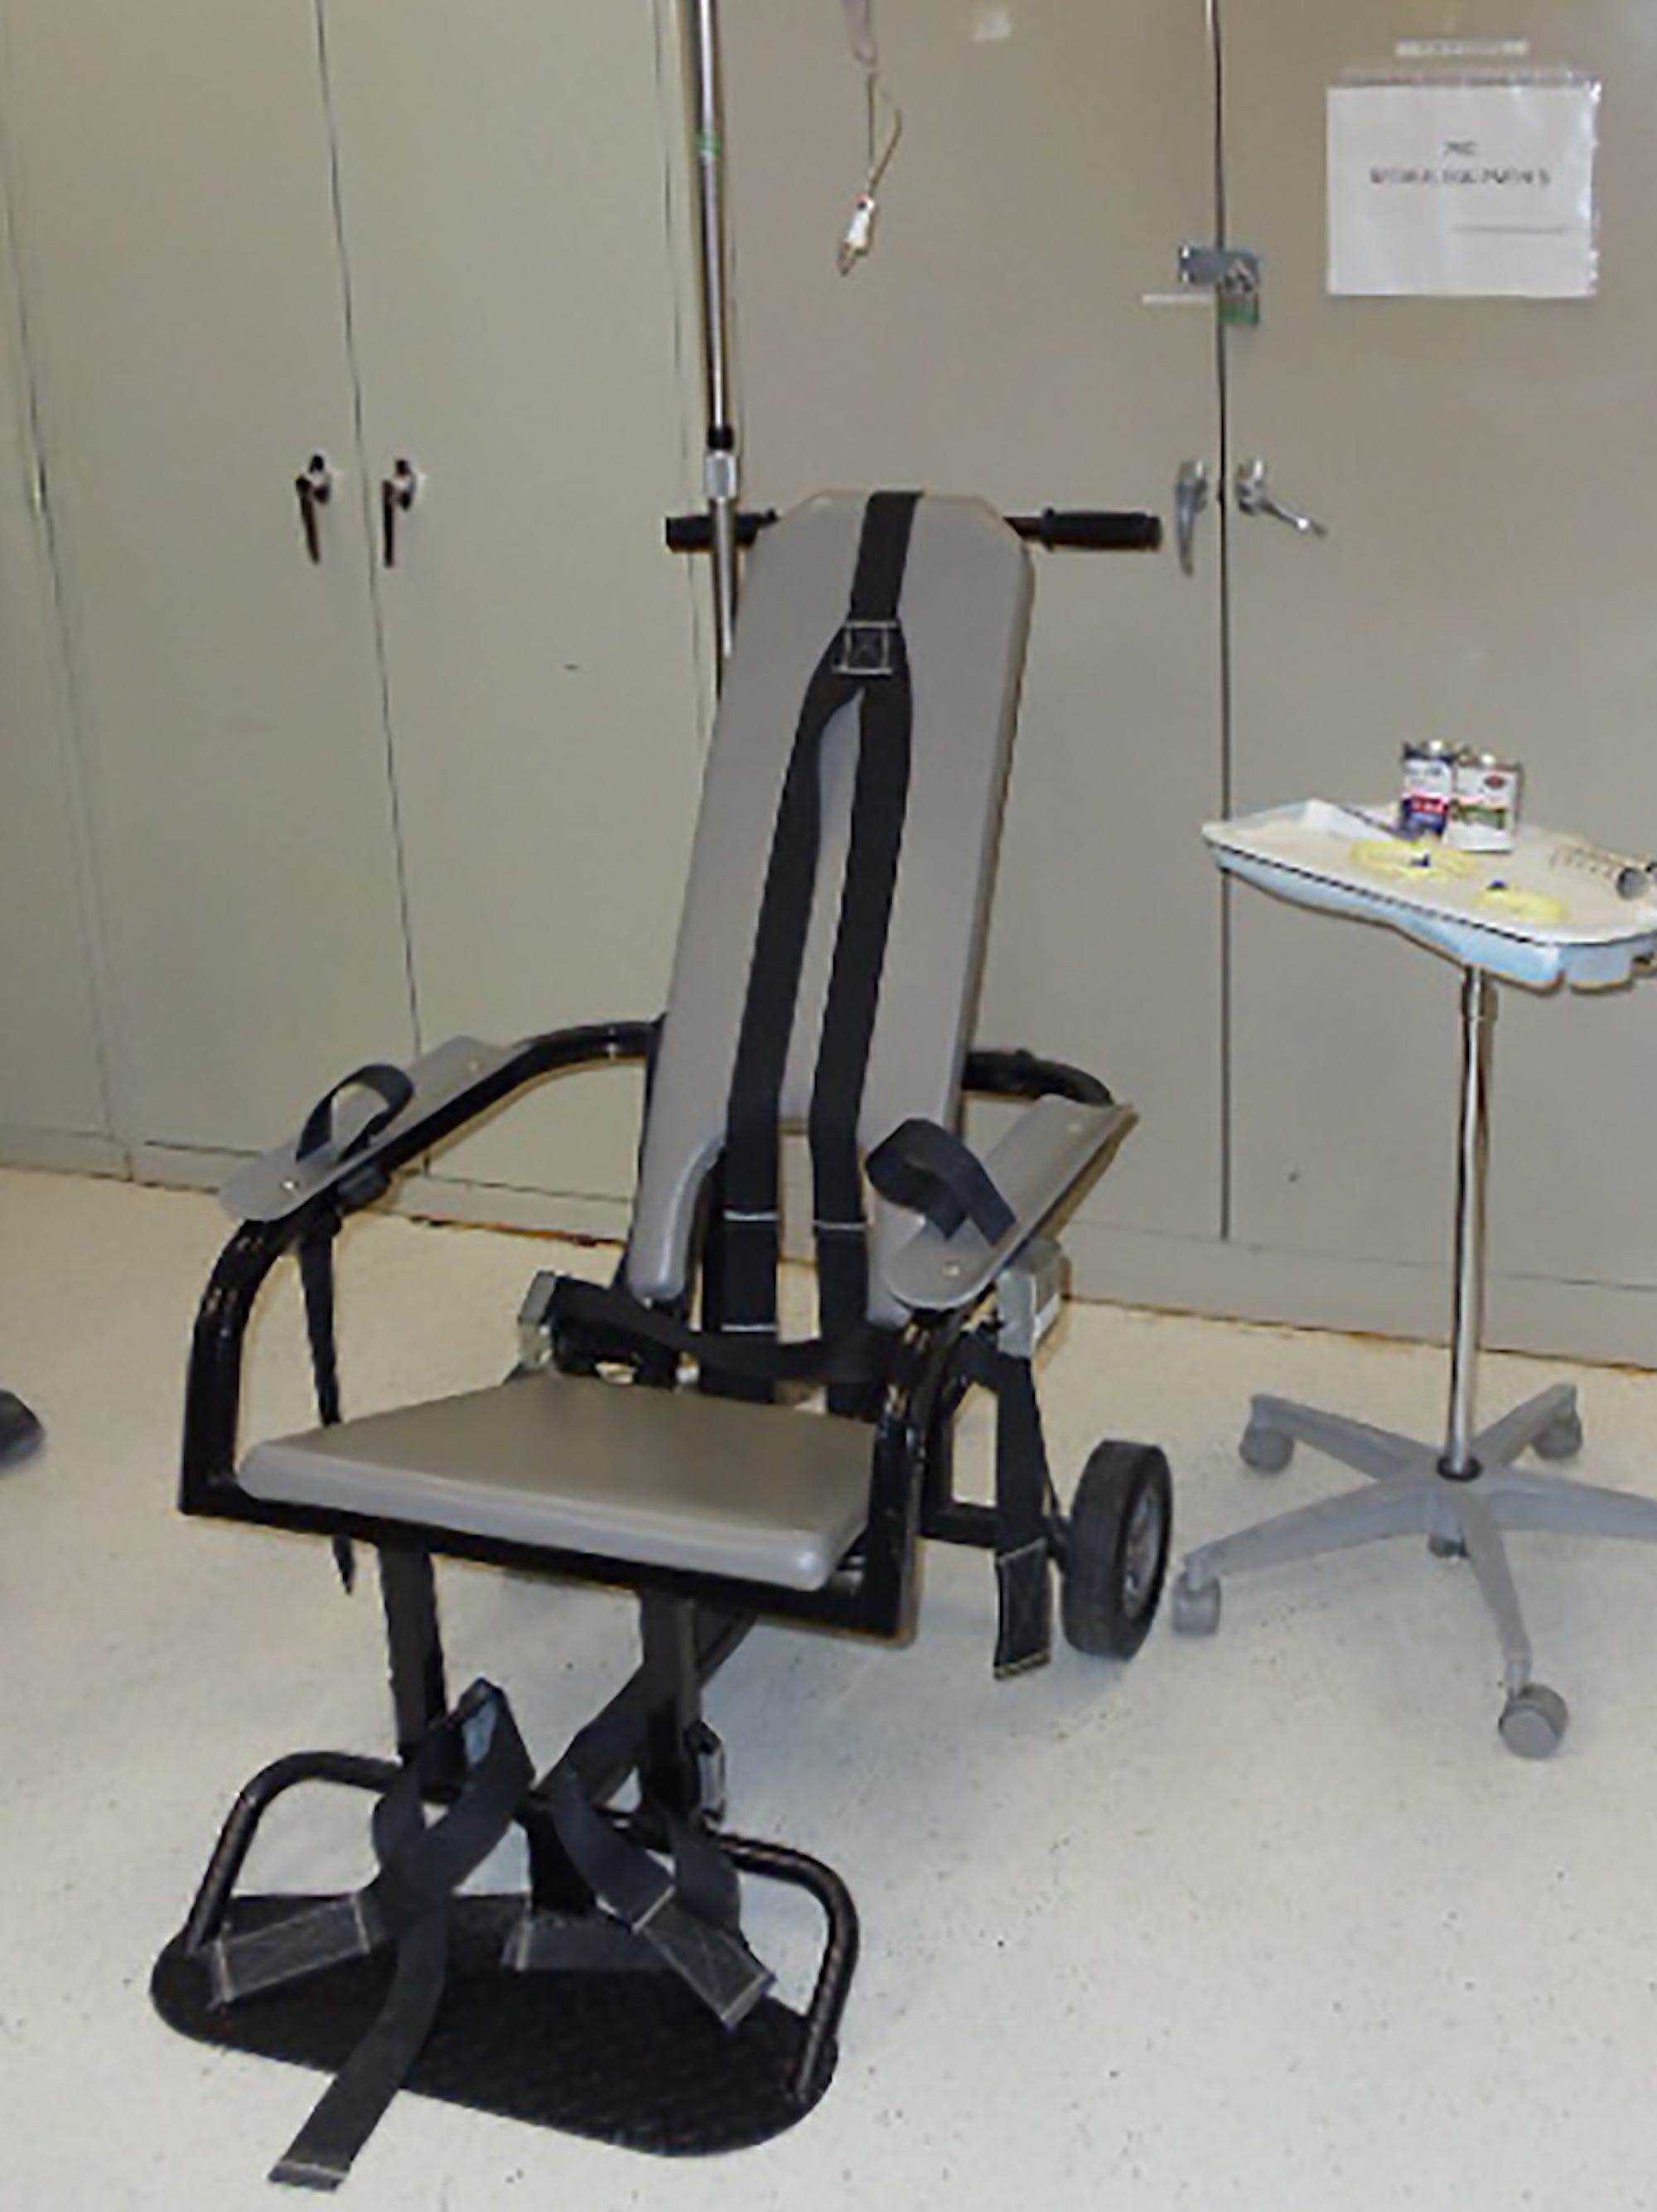 Ein „Rückhaltestuhl“ und andere Ausrüstungsgegenstände, wie sie bei der Zwangsernährung von Häftlingen verwendet werden